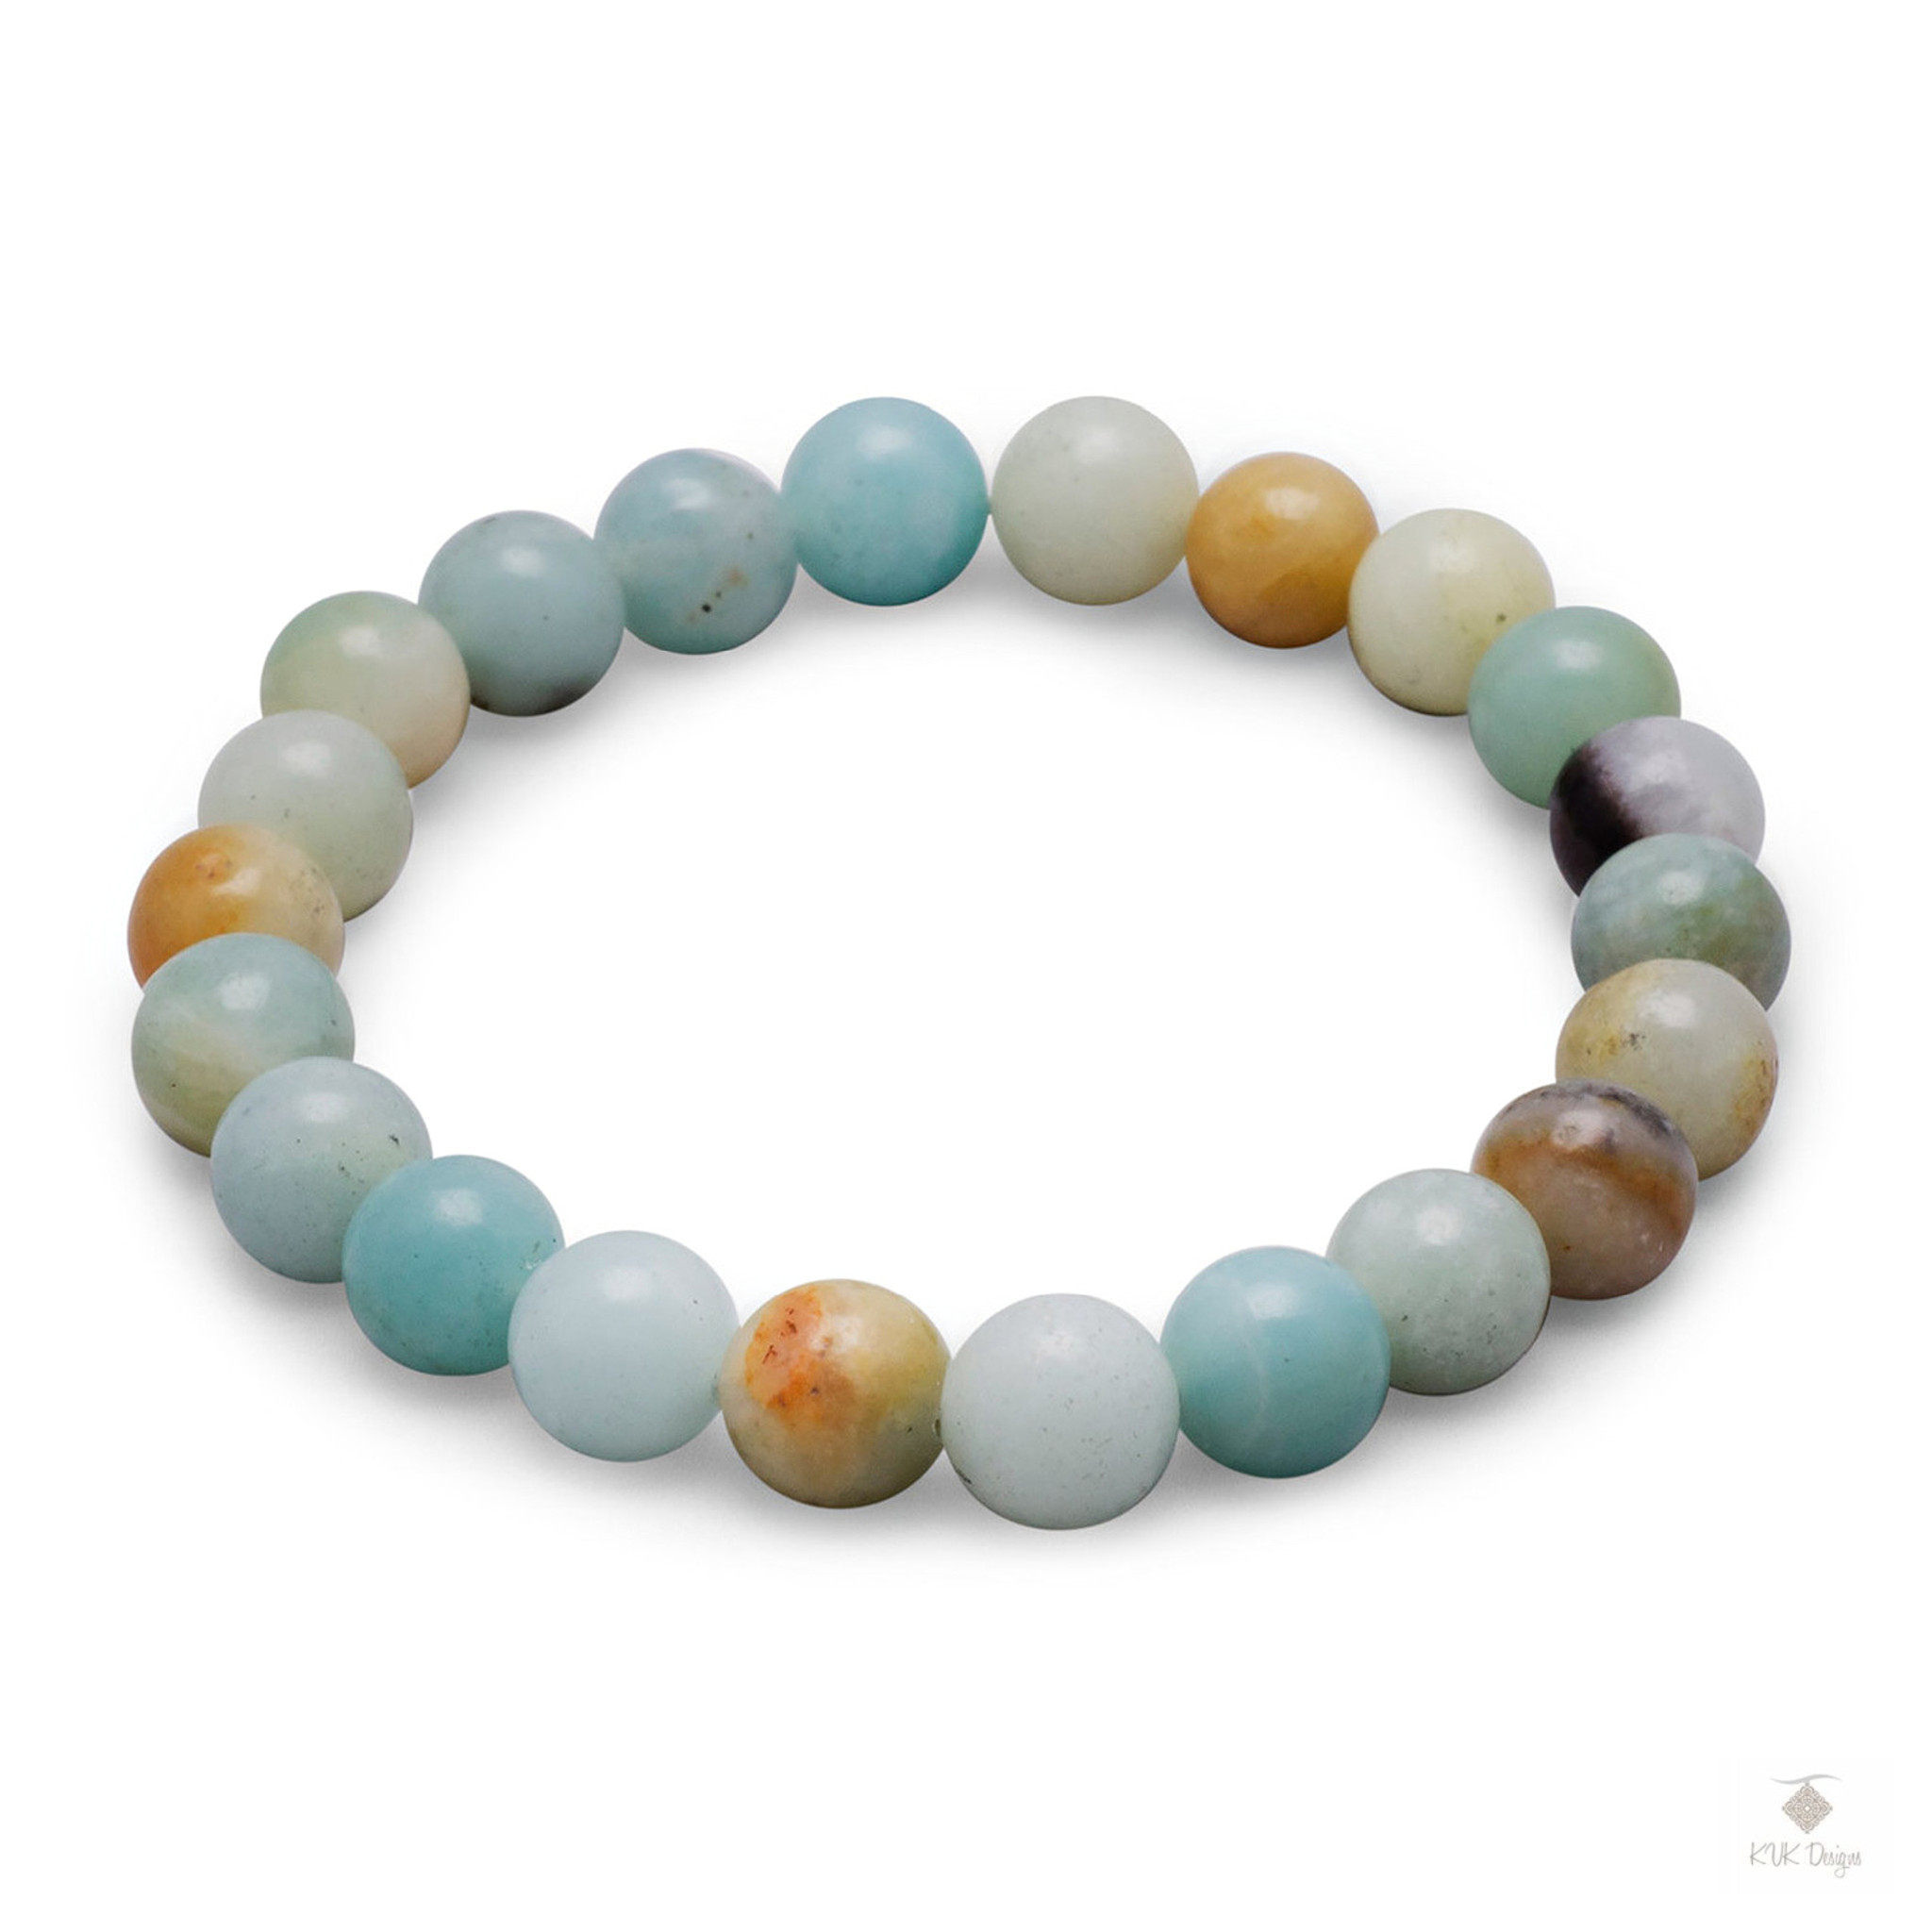 Gemstone Bracelets for Women & Men - Sheryl Lowe